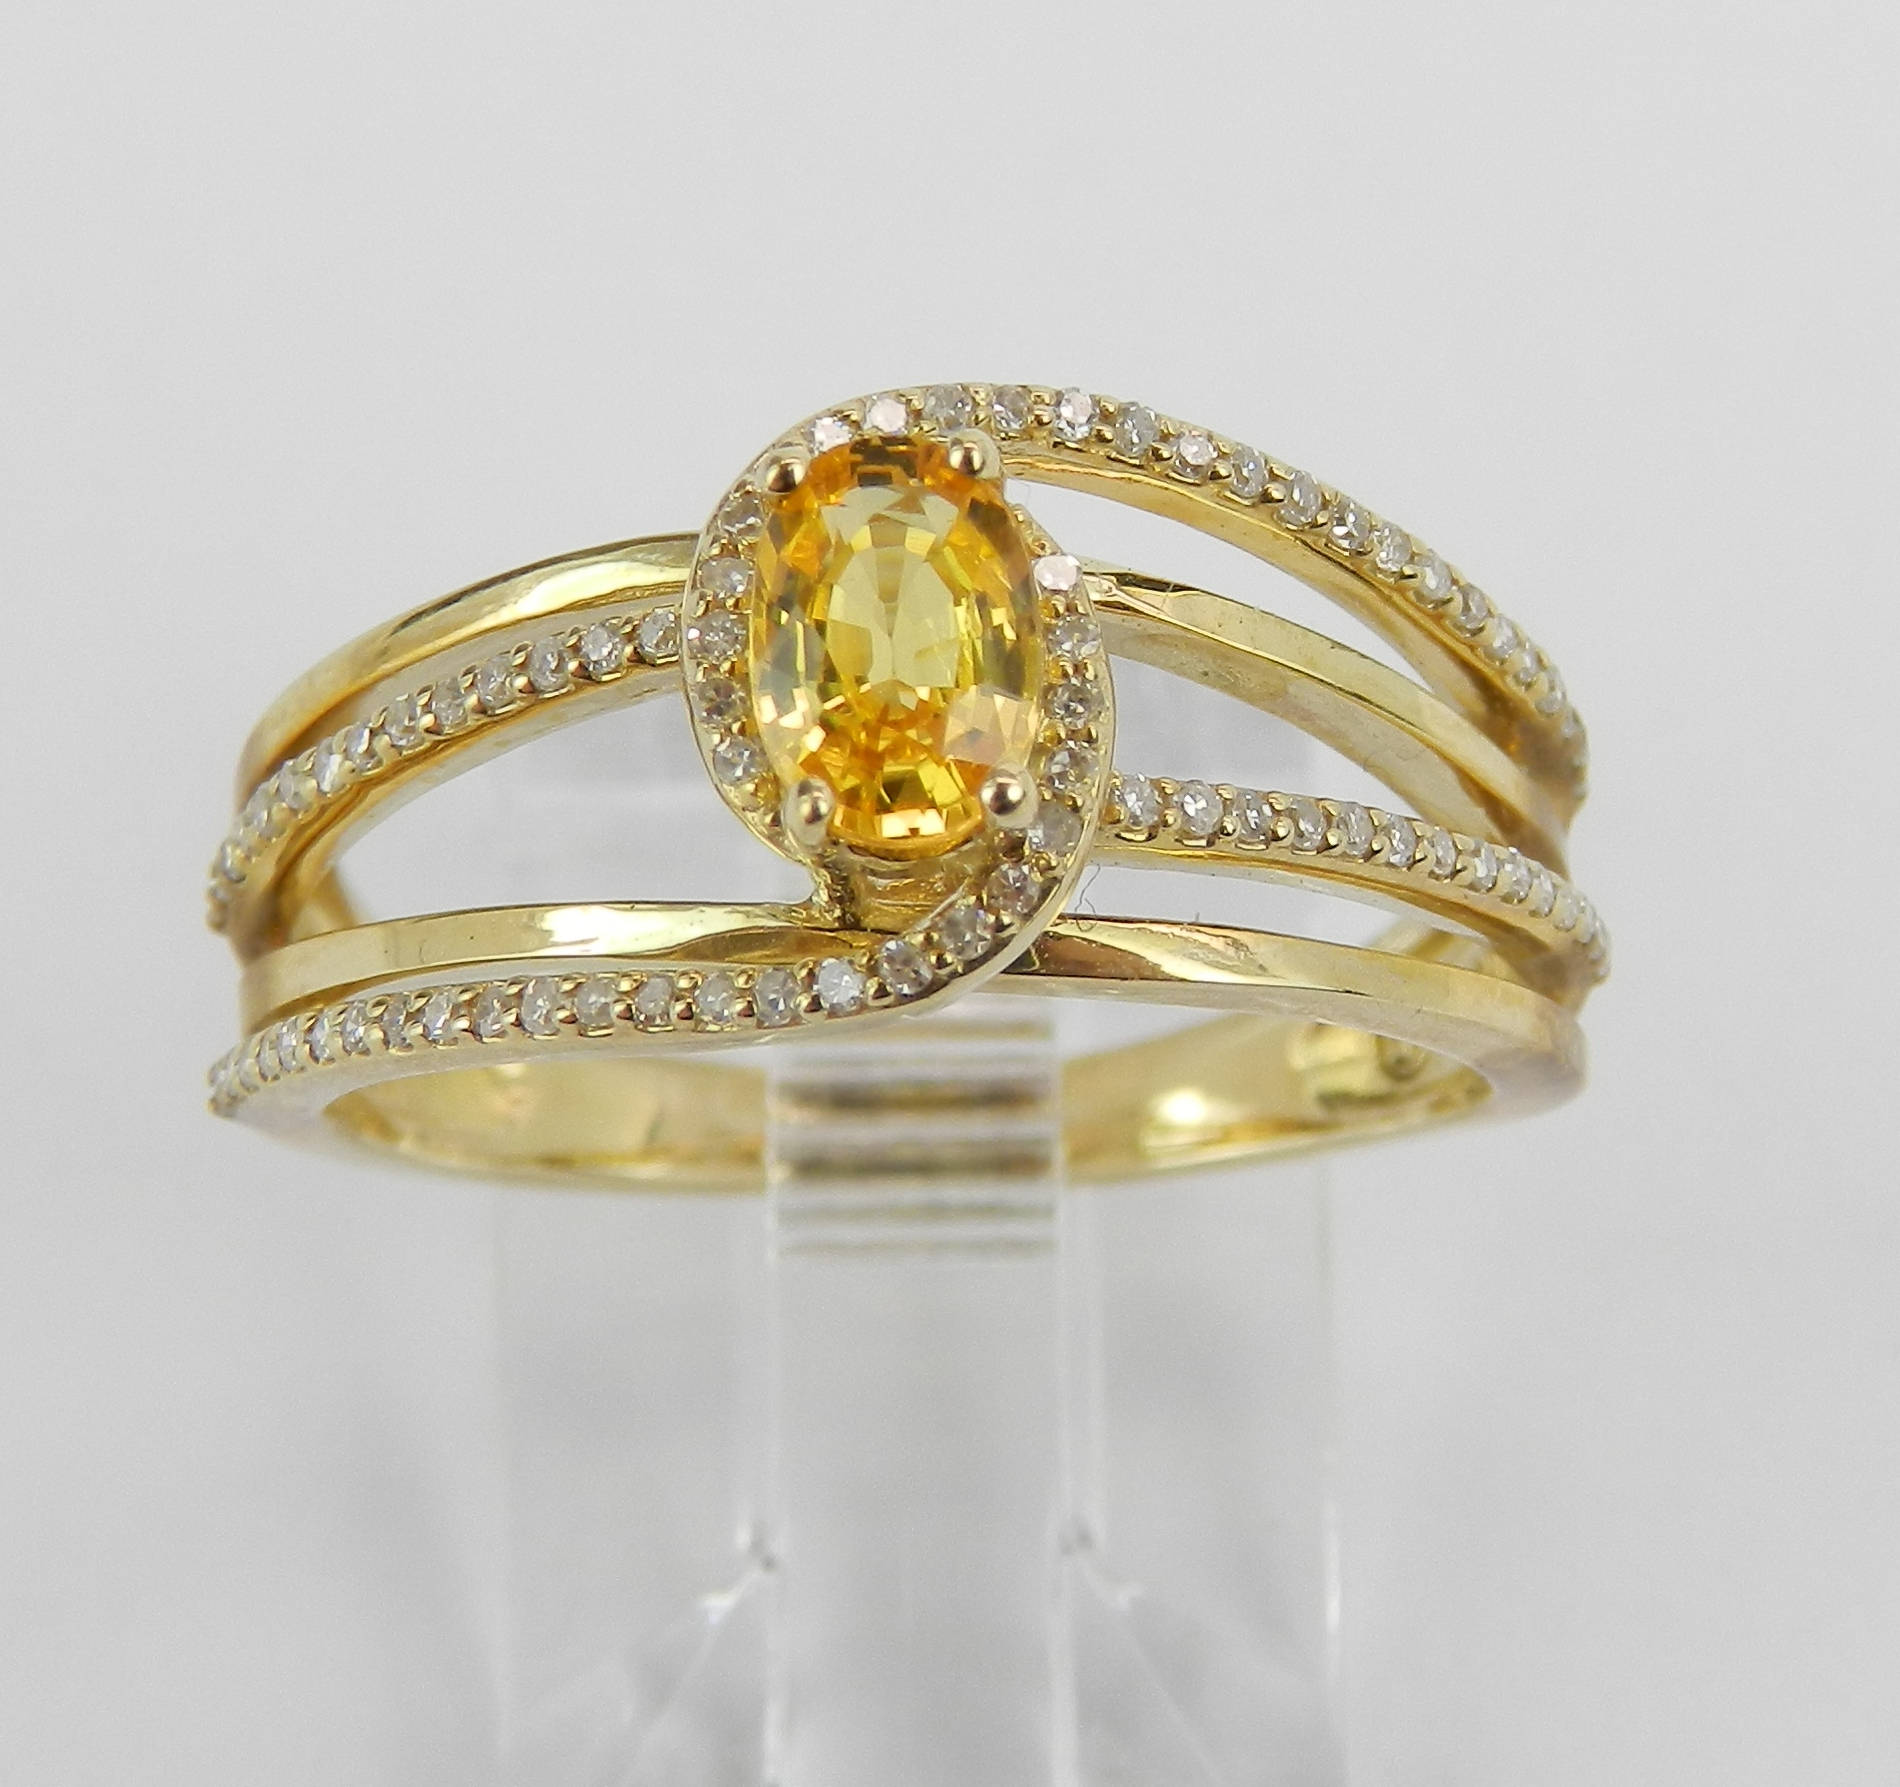 Buy Bridal Wear Full Hand Jewellery One Gram Gold Plated Adjustable 3  Finger Rings Bracelet Set Online